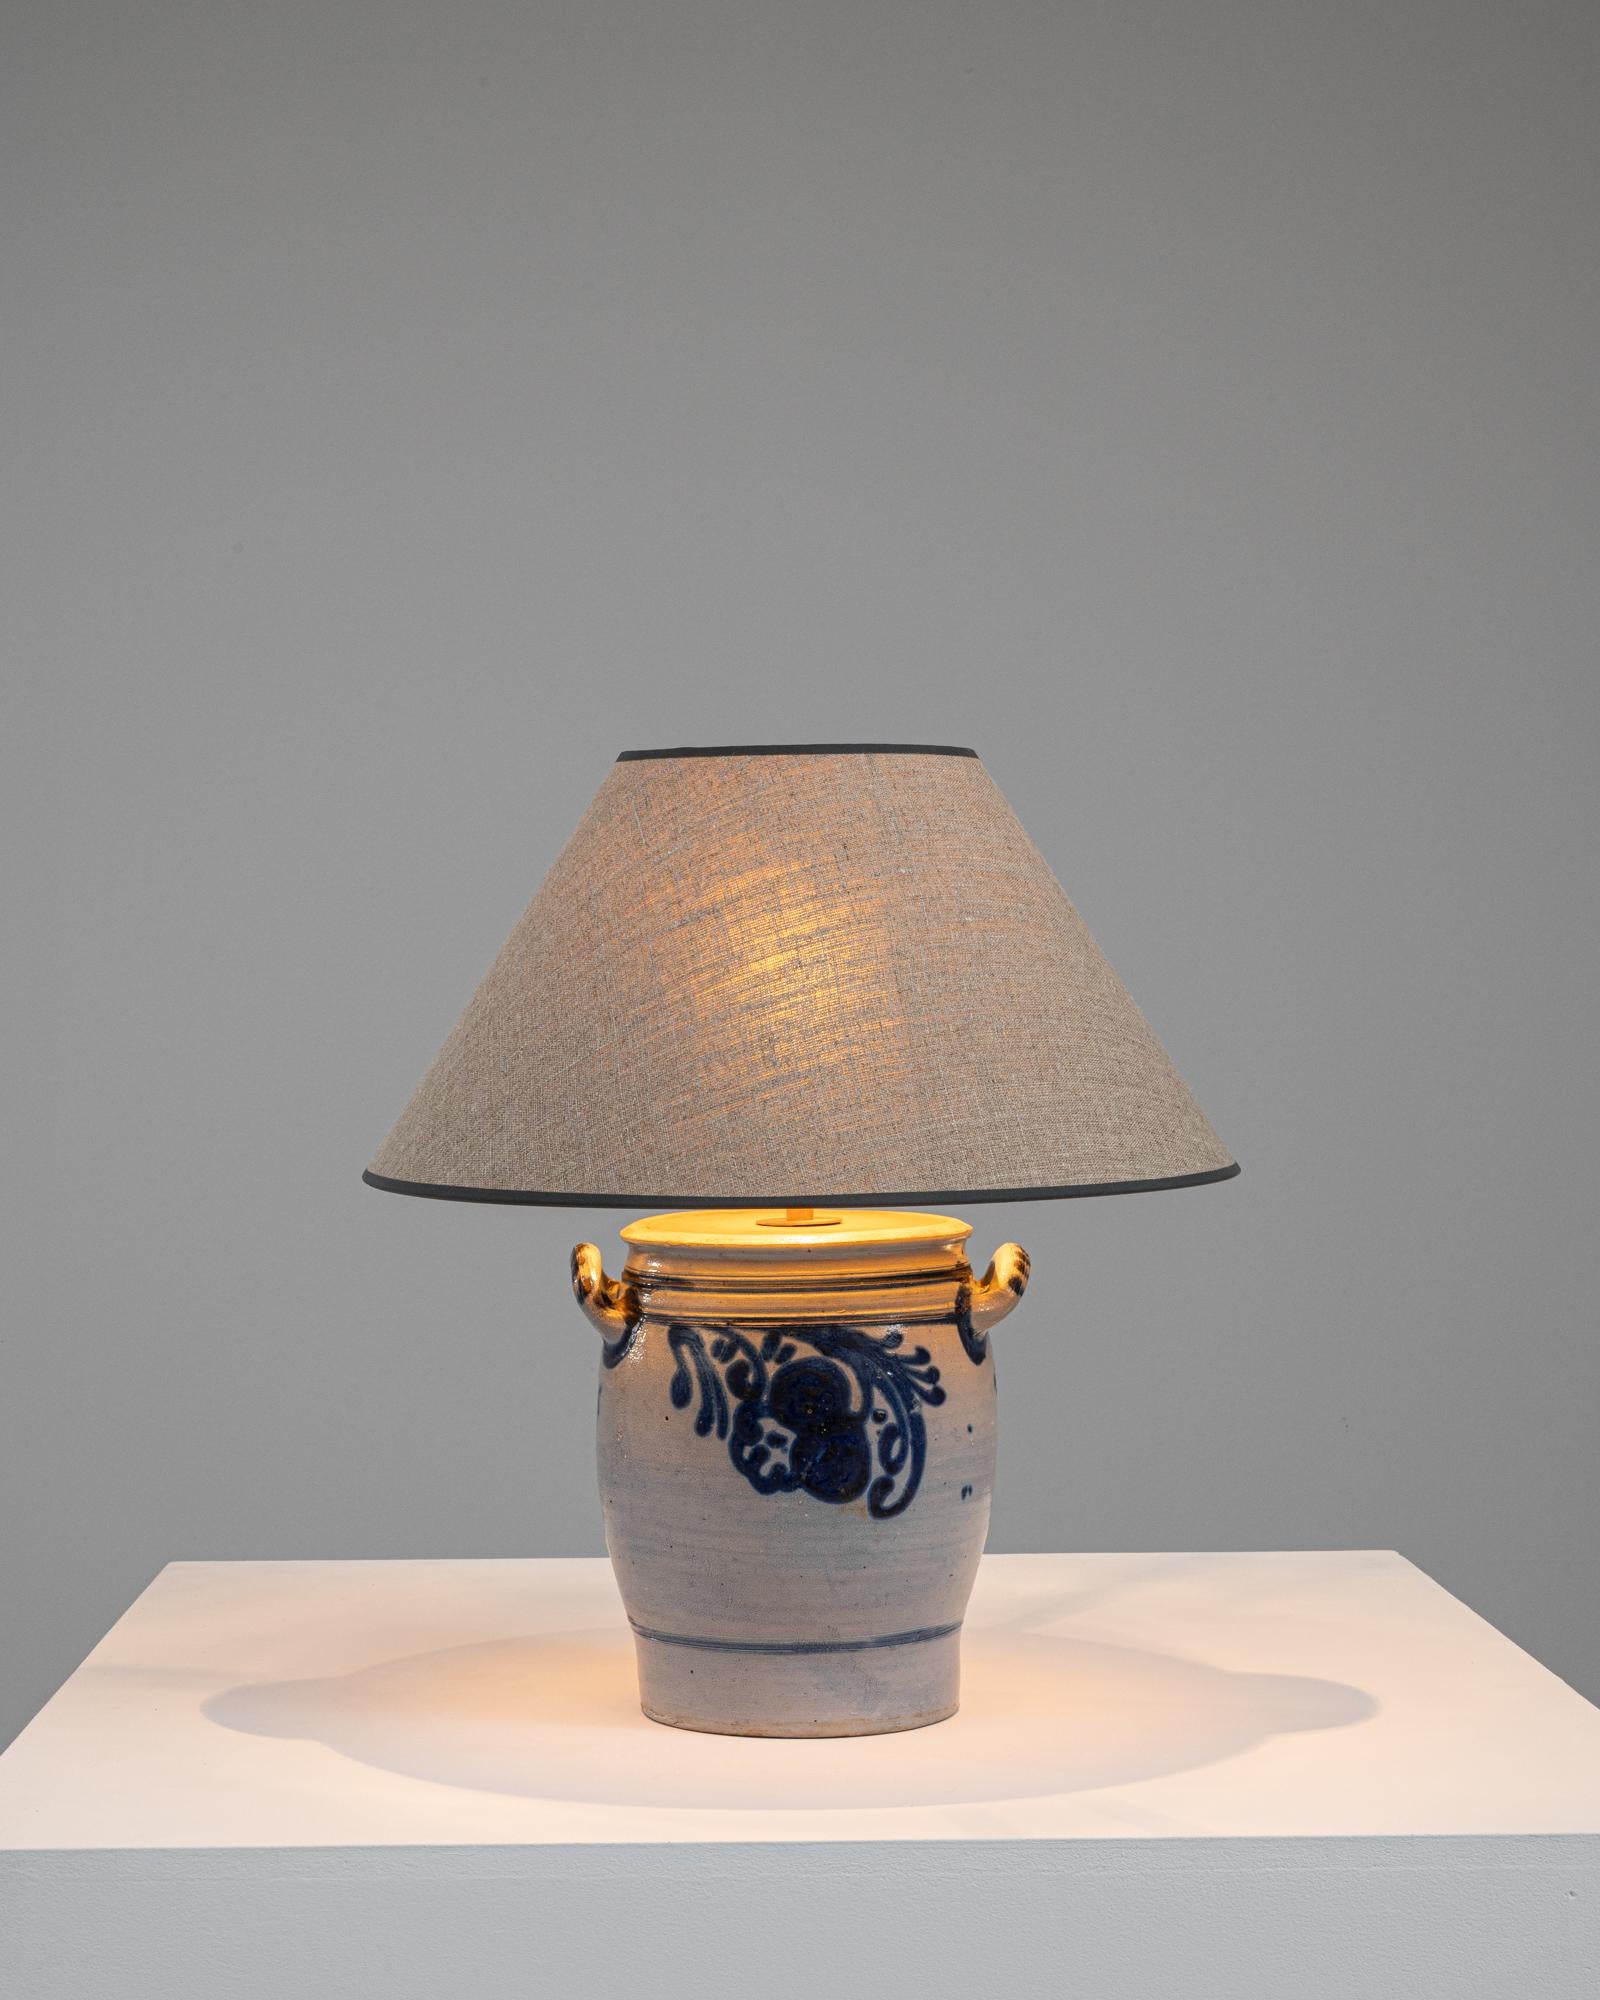 Cette lampe de table en céramique belge des années 1900 est une délicieuse fusion d'artisanat historique et de charme pittoresque. La base en céramique robuste, ornée d'un motif floral bleu distinctif sur un fond gris doux, capture l'essence de la